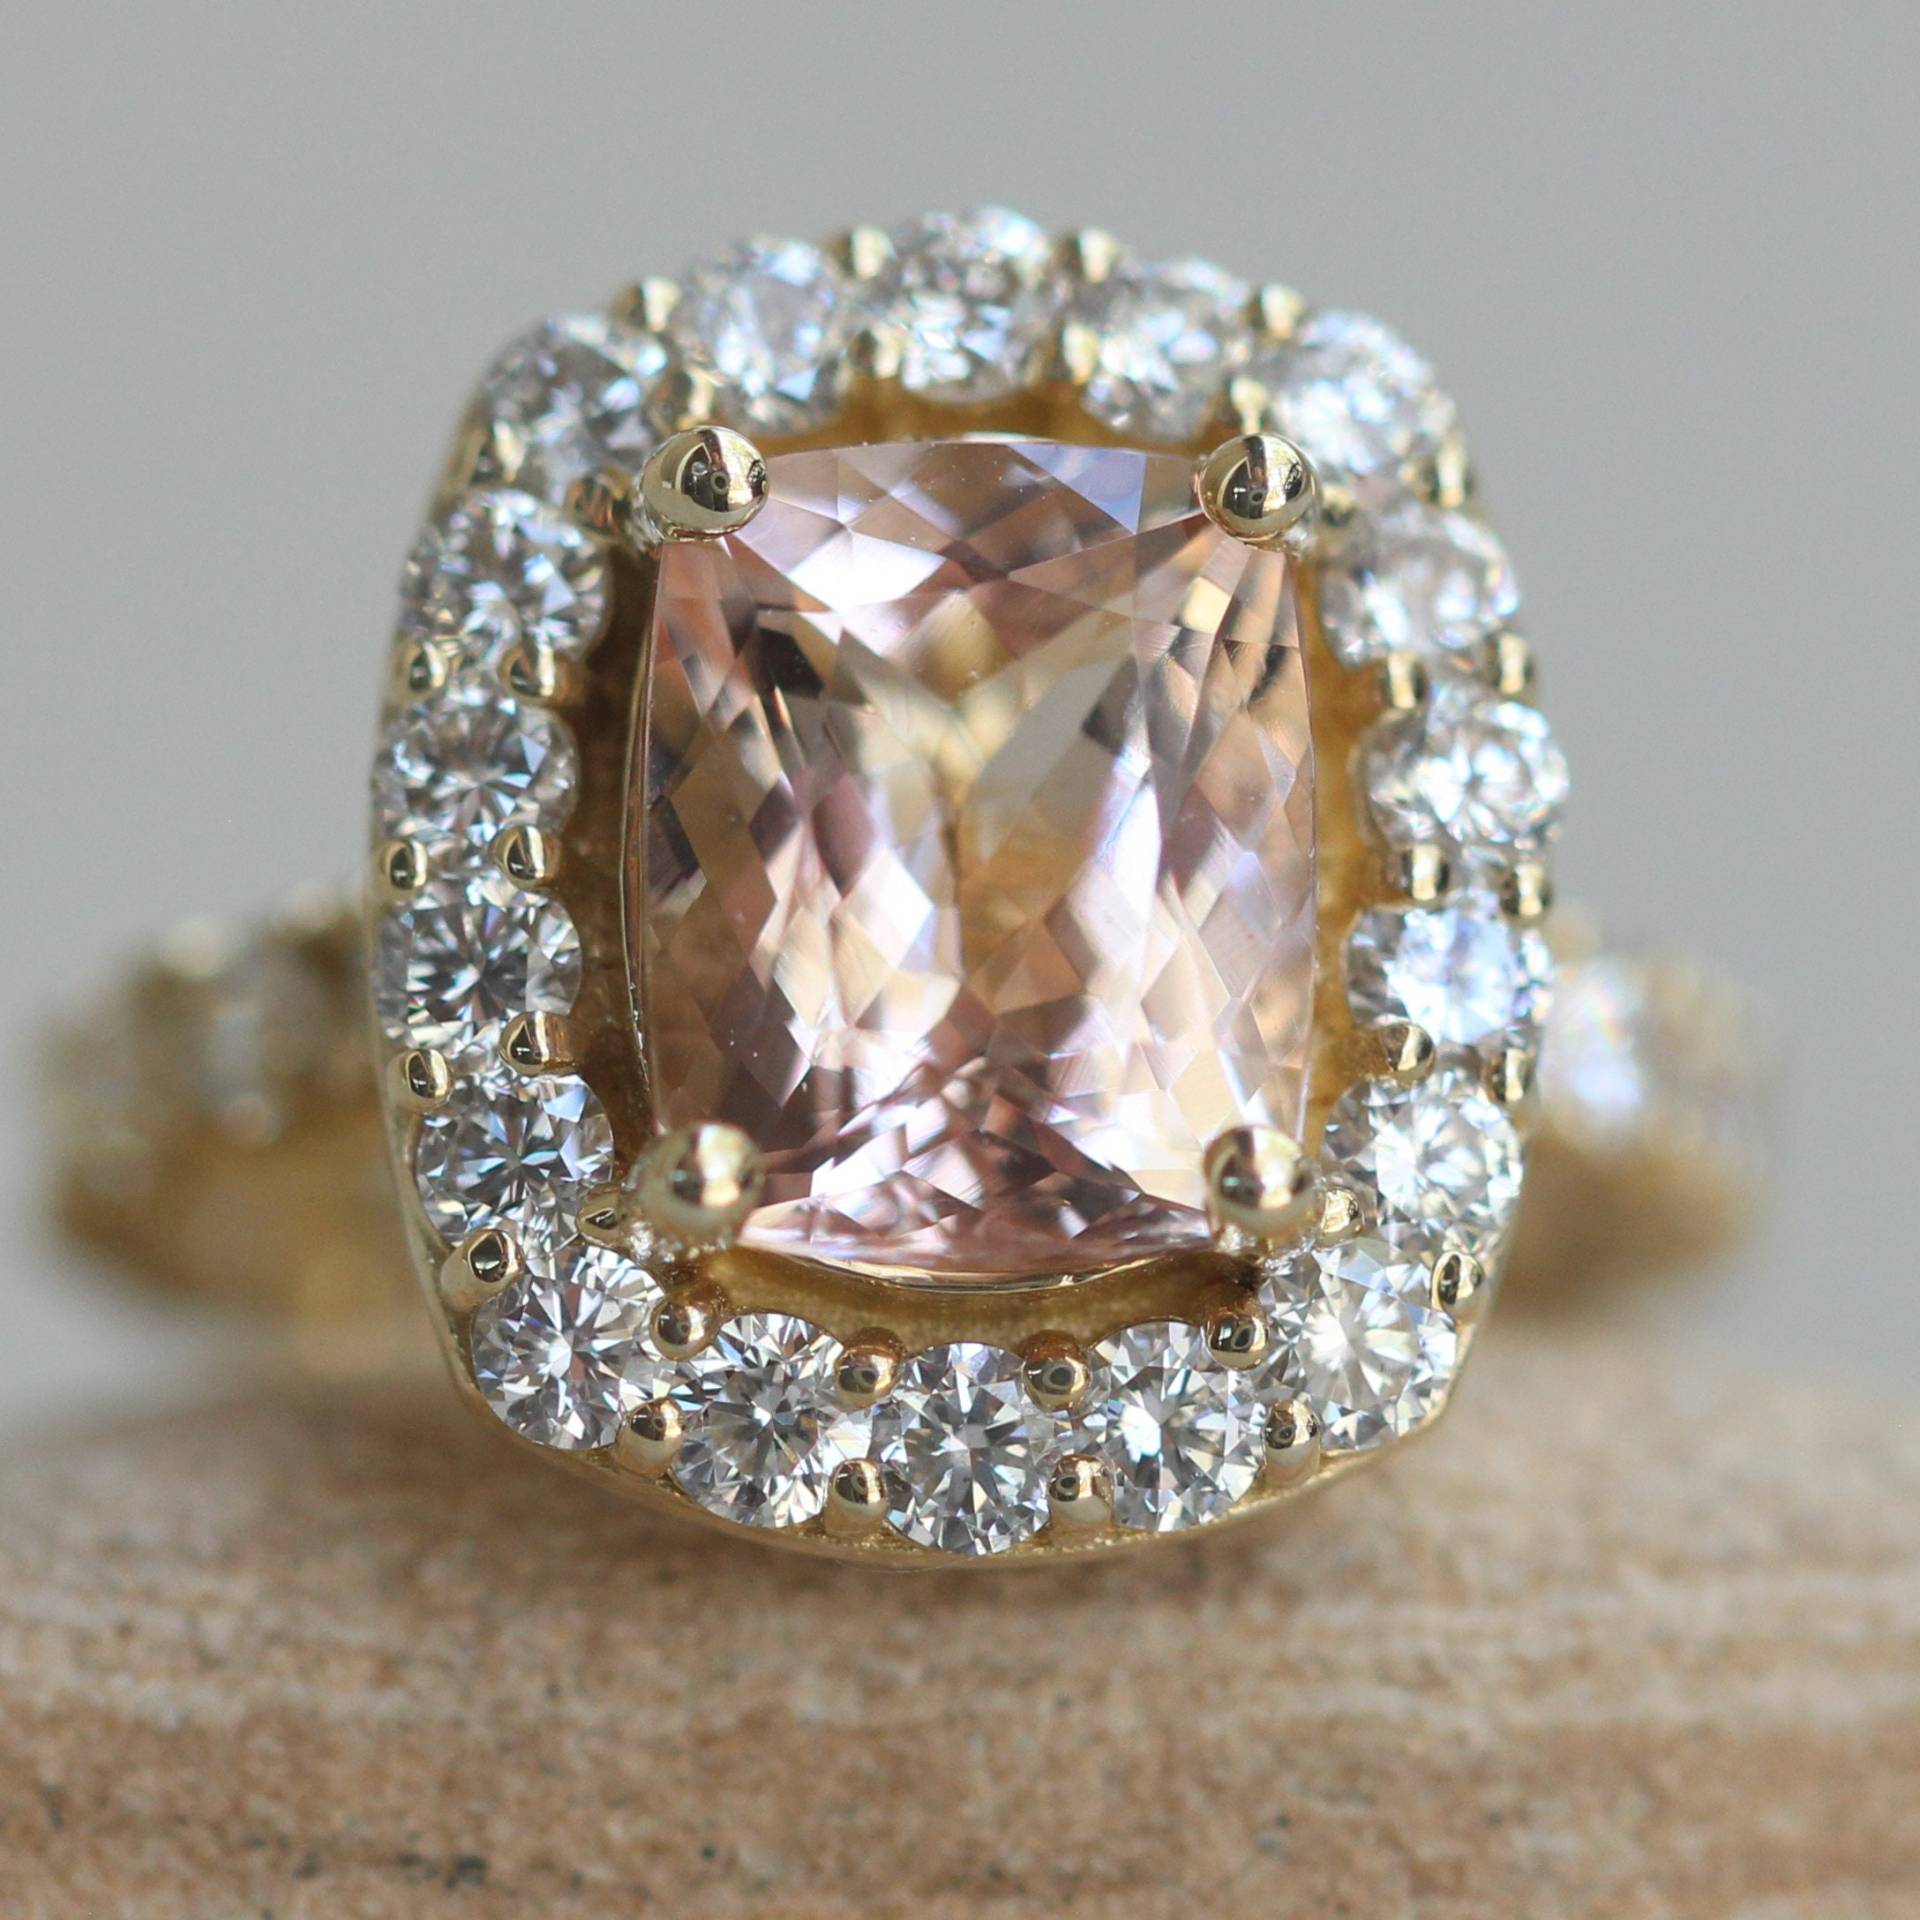 Kissen-Morganit-Ring Mit Großem Diamantschaft, Diamant-Korb, Lebenslanger Pflegeplan Inklusive, Echte Edelsteine Und Diamanten Ls7161 von LaurieSarahDesigns